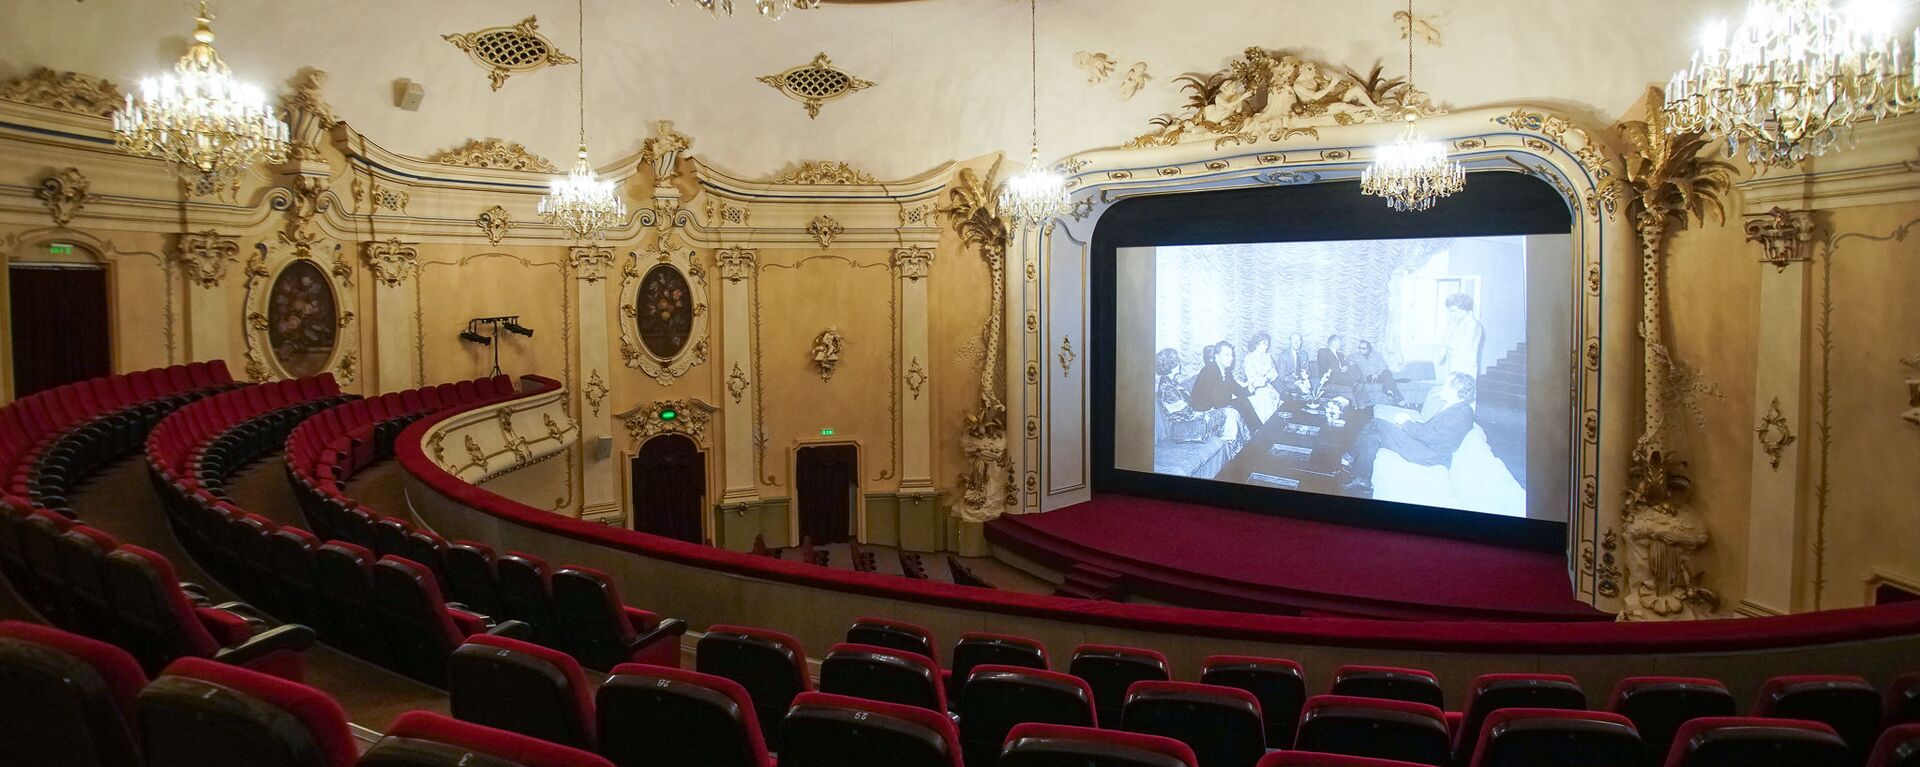 В кинотеатре сделан акцент на европейское кино и принципиально не продают поп-корн - Sputnik Латвия, 1920, 17.12.2019